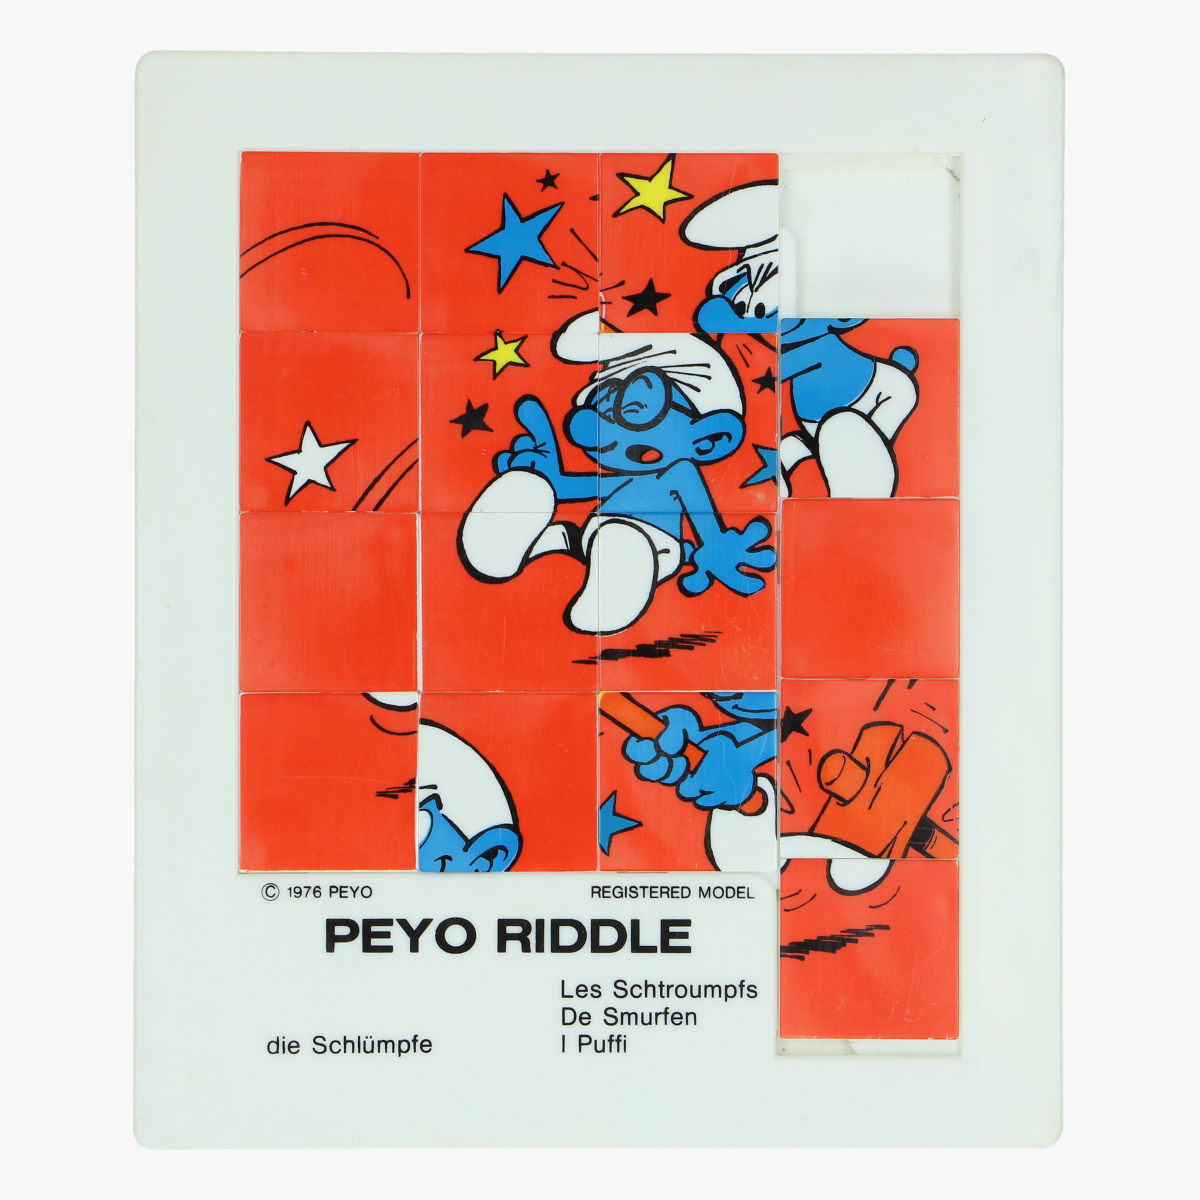 Afbeeldingen van de smurfen peyo riddle 1976 made in belgium